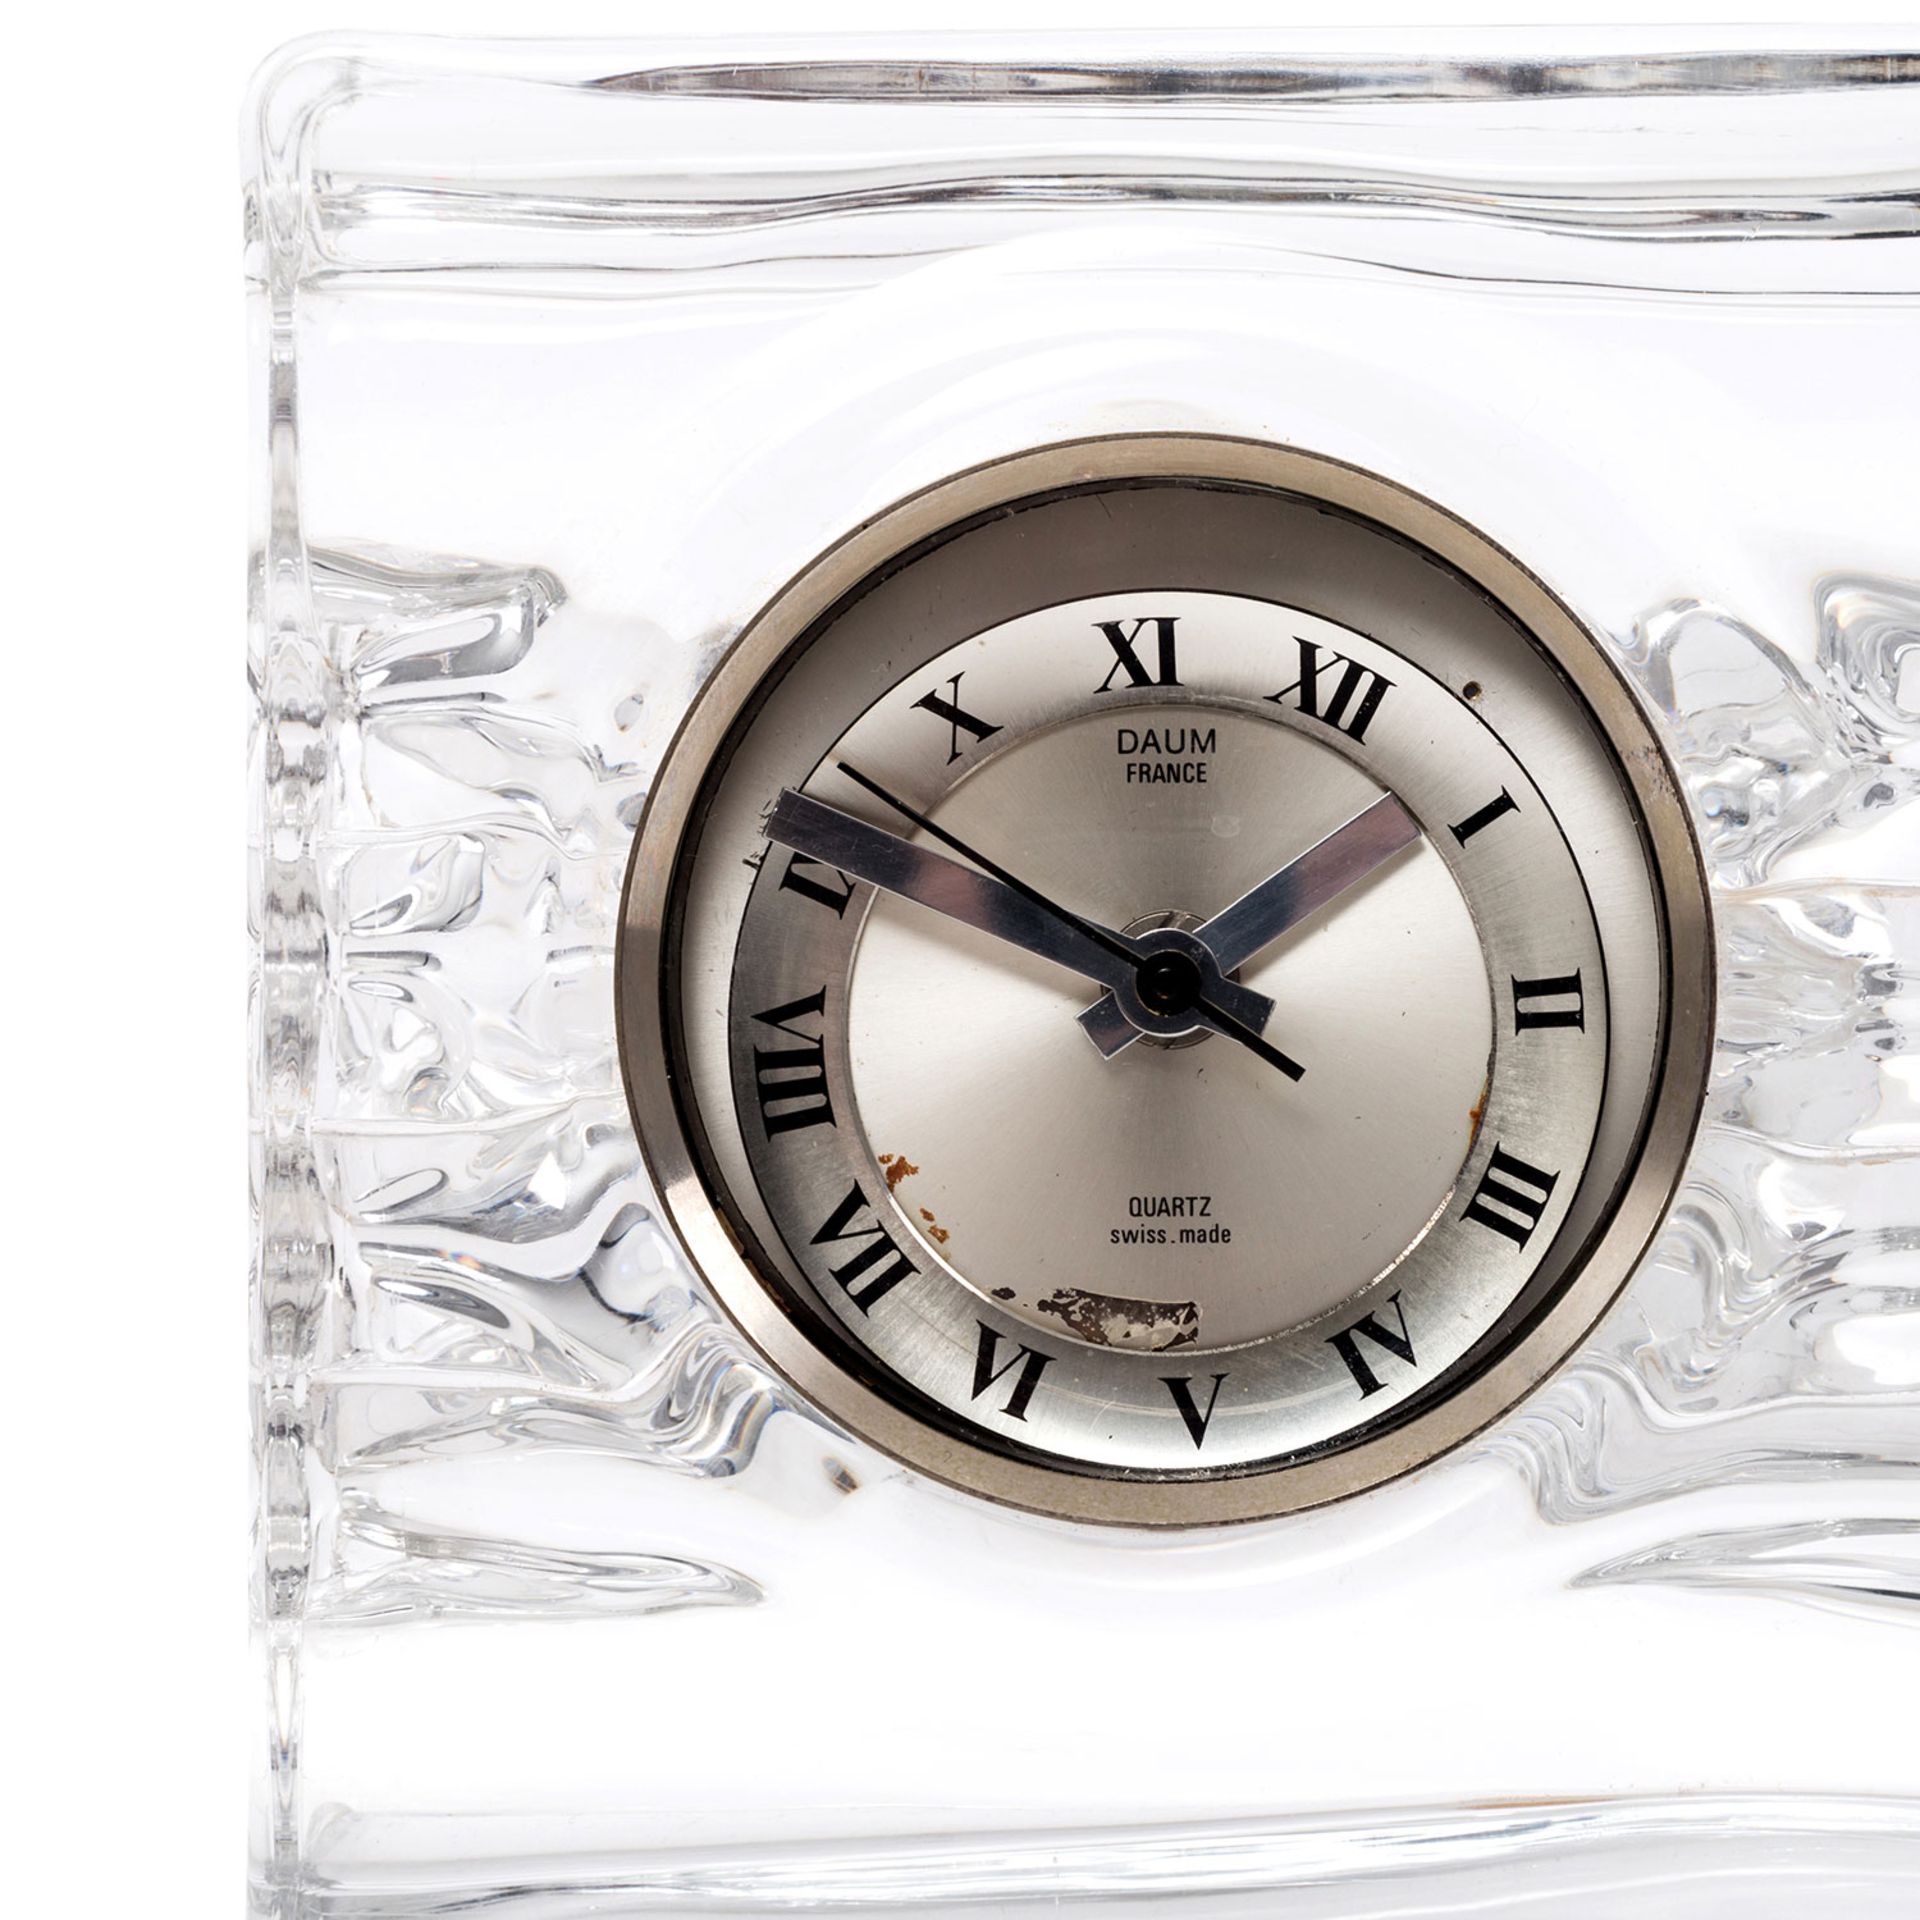 DAUM Quartz-Uhr, 20.Jh.quadratischer Glaskorpus mit eingesetzter Uhr, batteriebetrieben, - Bild 2 aus 4